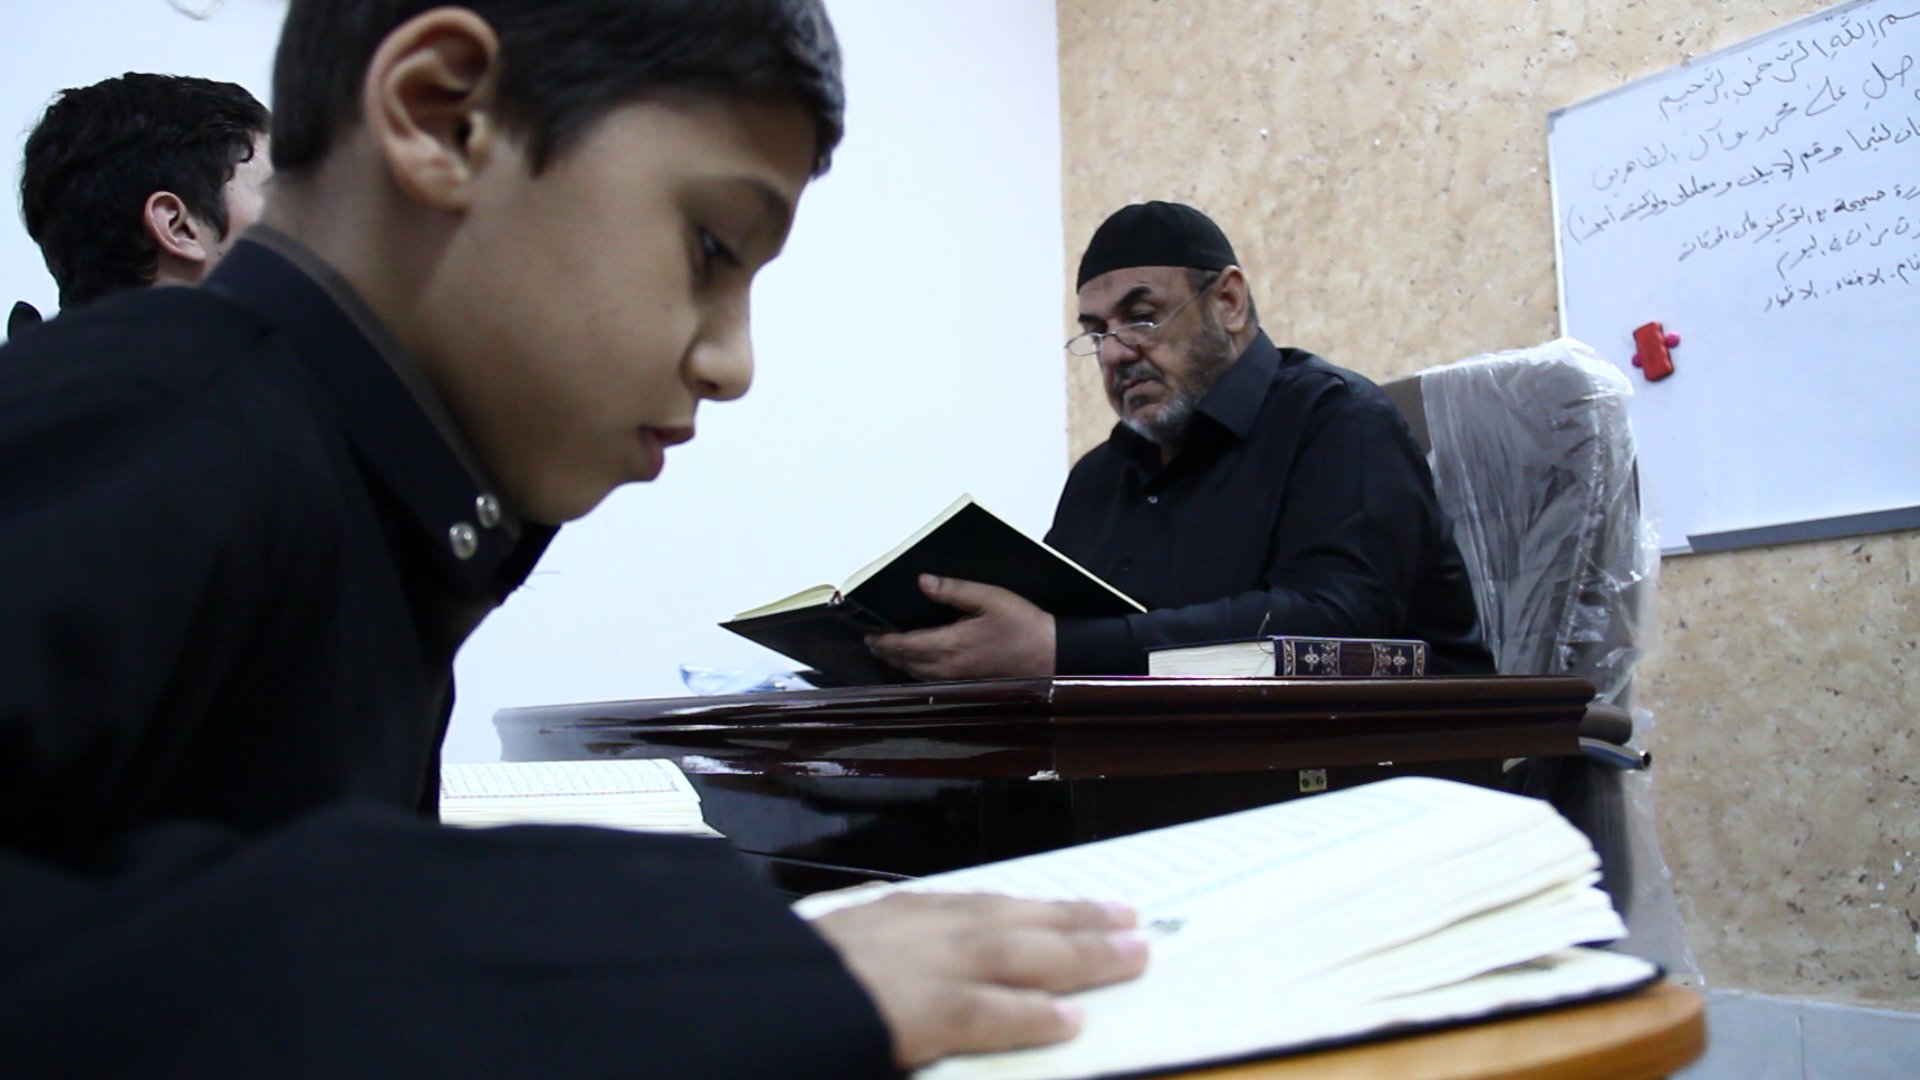 تواصل مشروع حلقات تحفيظ القرآن الكريم الذي أطلقه معهد القرآن الكريم التابع للعتبة العباسية المقدسة